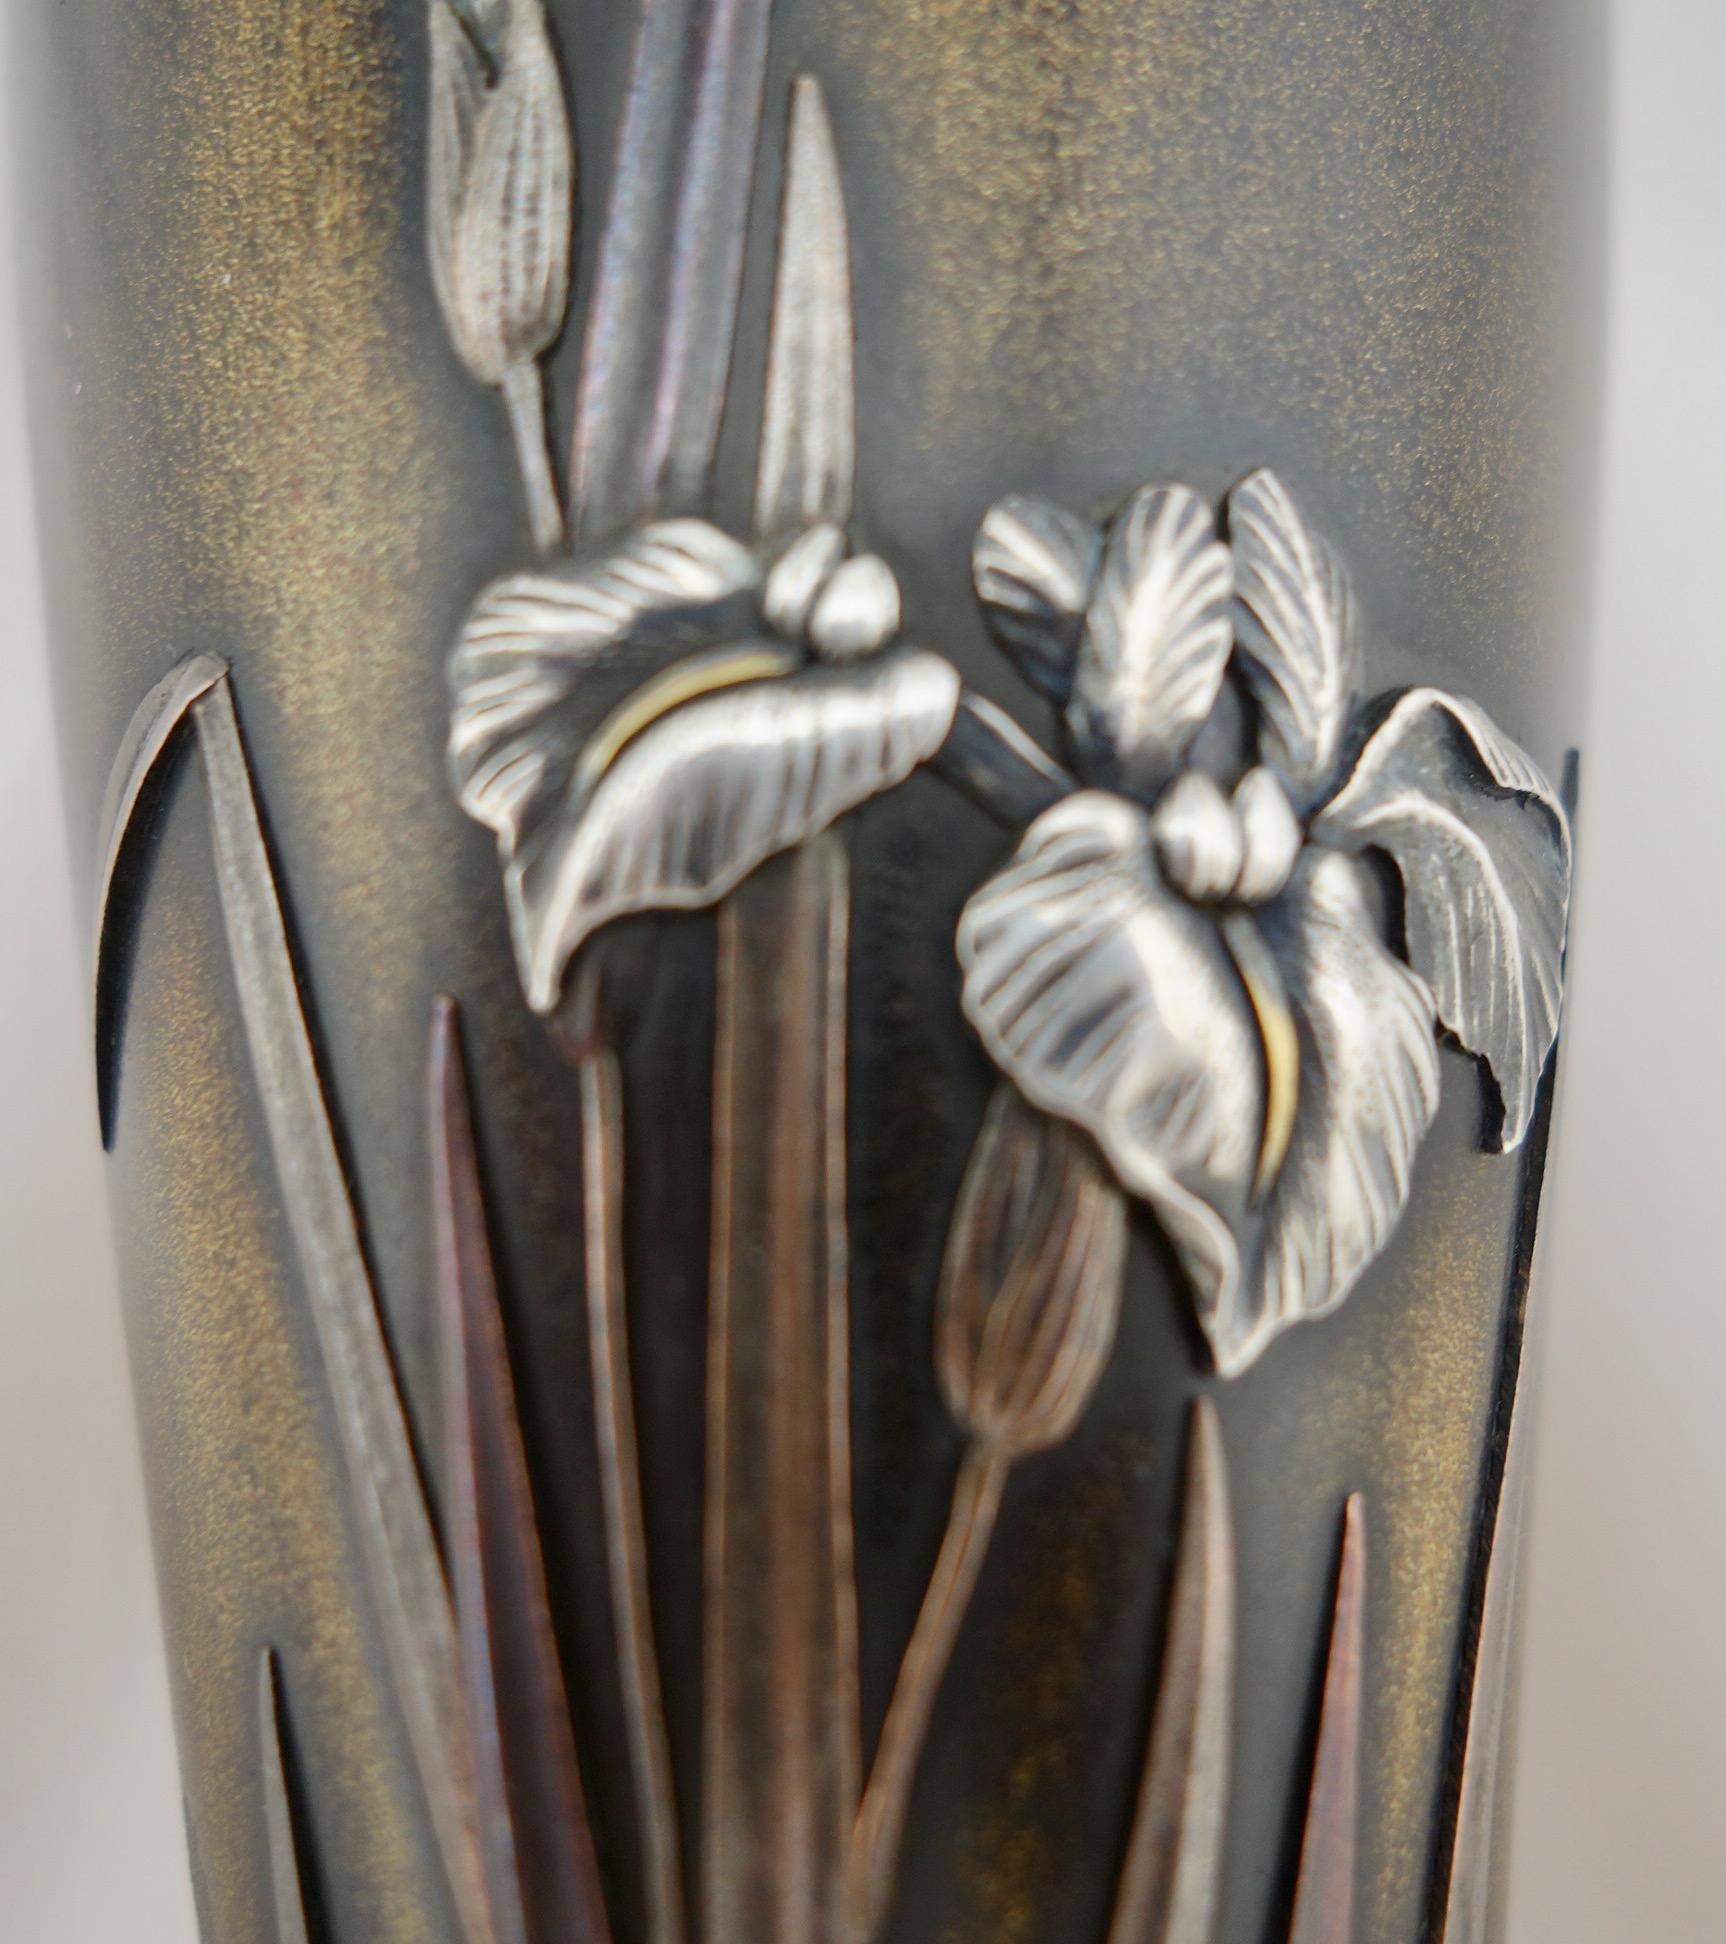 Vase shakudo japonais en métal mixte de la période Meiji. Le vase représente des fleurs d'iris argentées sur une base en bronze. Signé sur le côté par le fabricant, et marqué sur le fond pour l'atelier Nogawa. Le vase présente une légère perte de